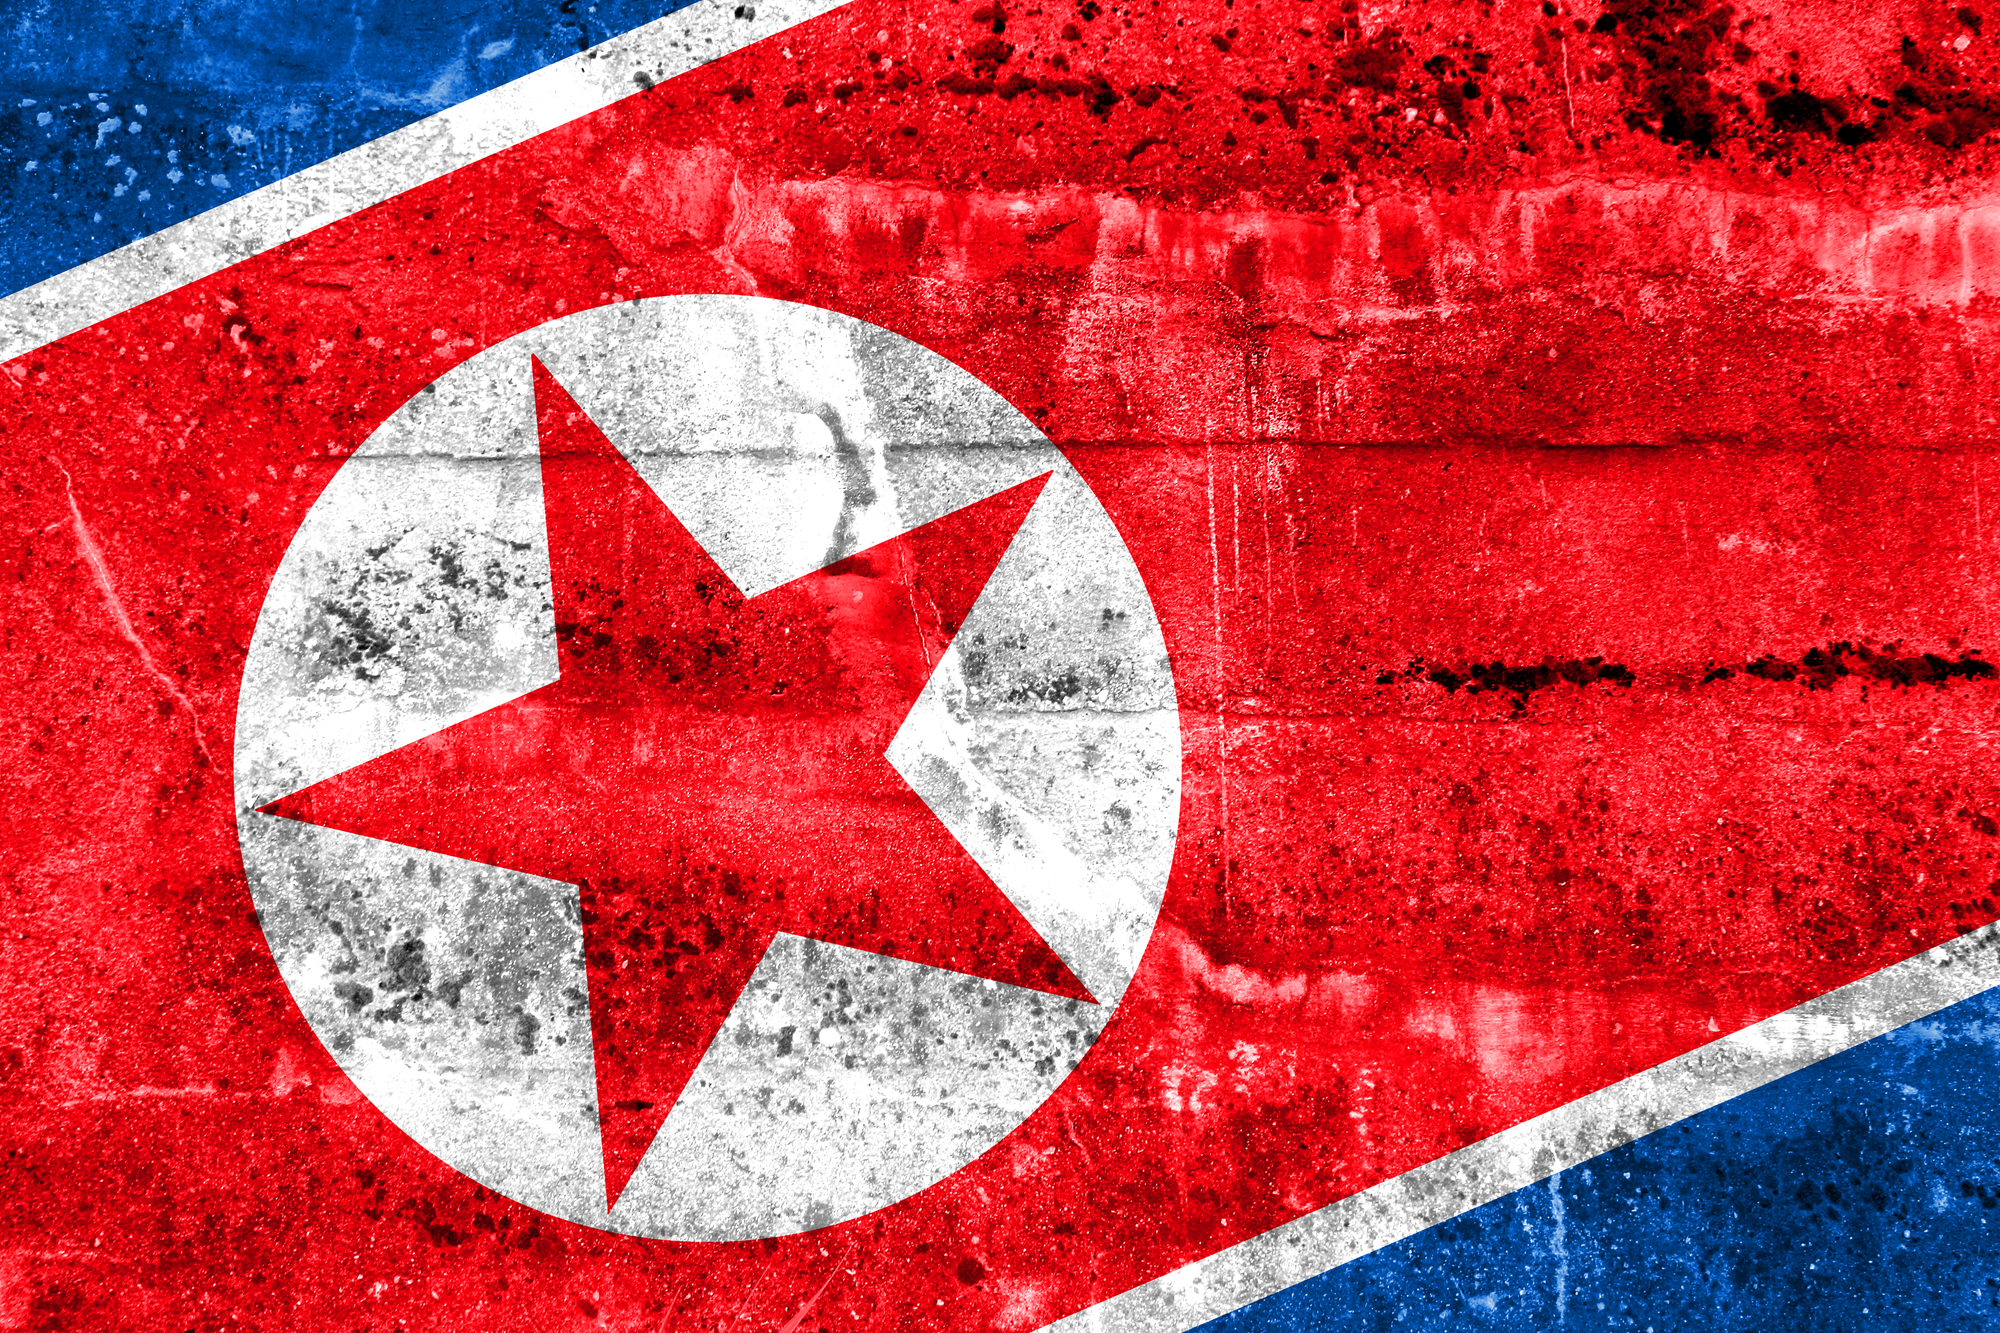 Elengedték az Észak-Koreában őrizetbe vett ausztrál állampolgárt